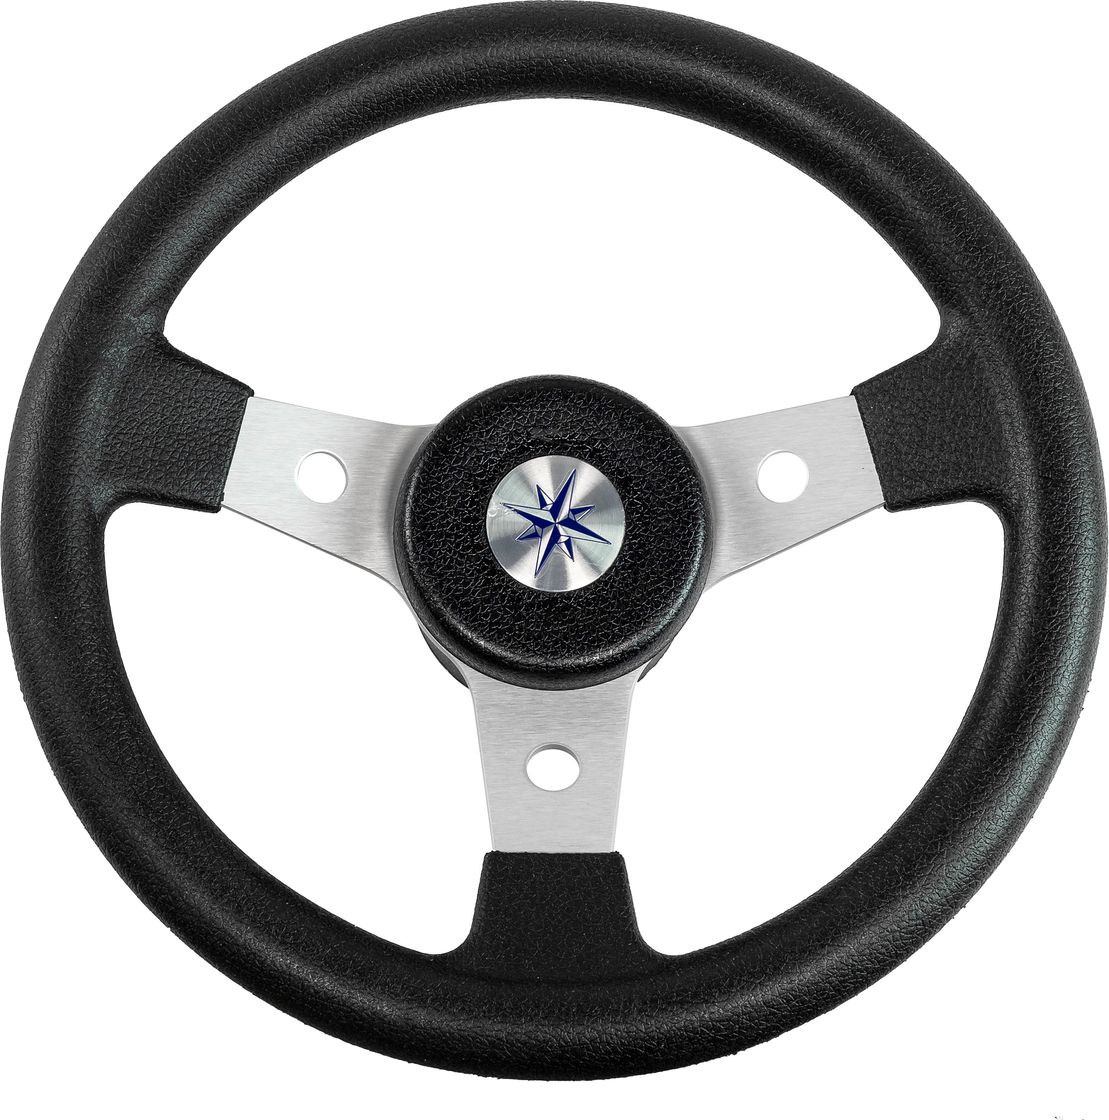 Рулевое колесо DELFINO обод черный,спицы серебряные д. 310 мм VN70103-01 рулевое колесо leader wood деревянный обод серебряные спицы д 360 мм vn7360 33